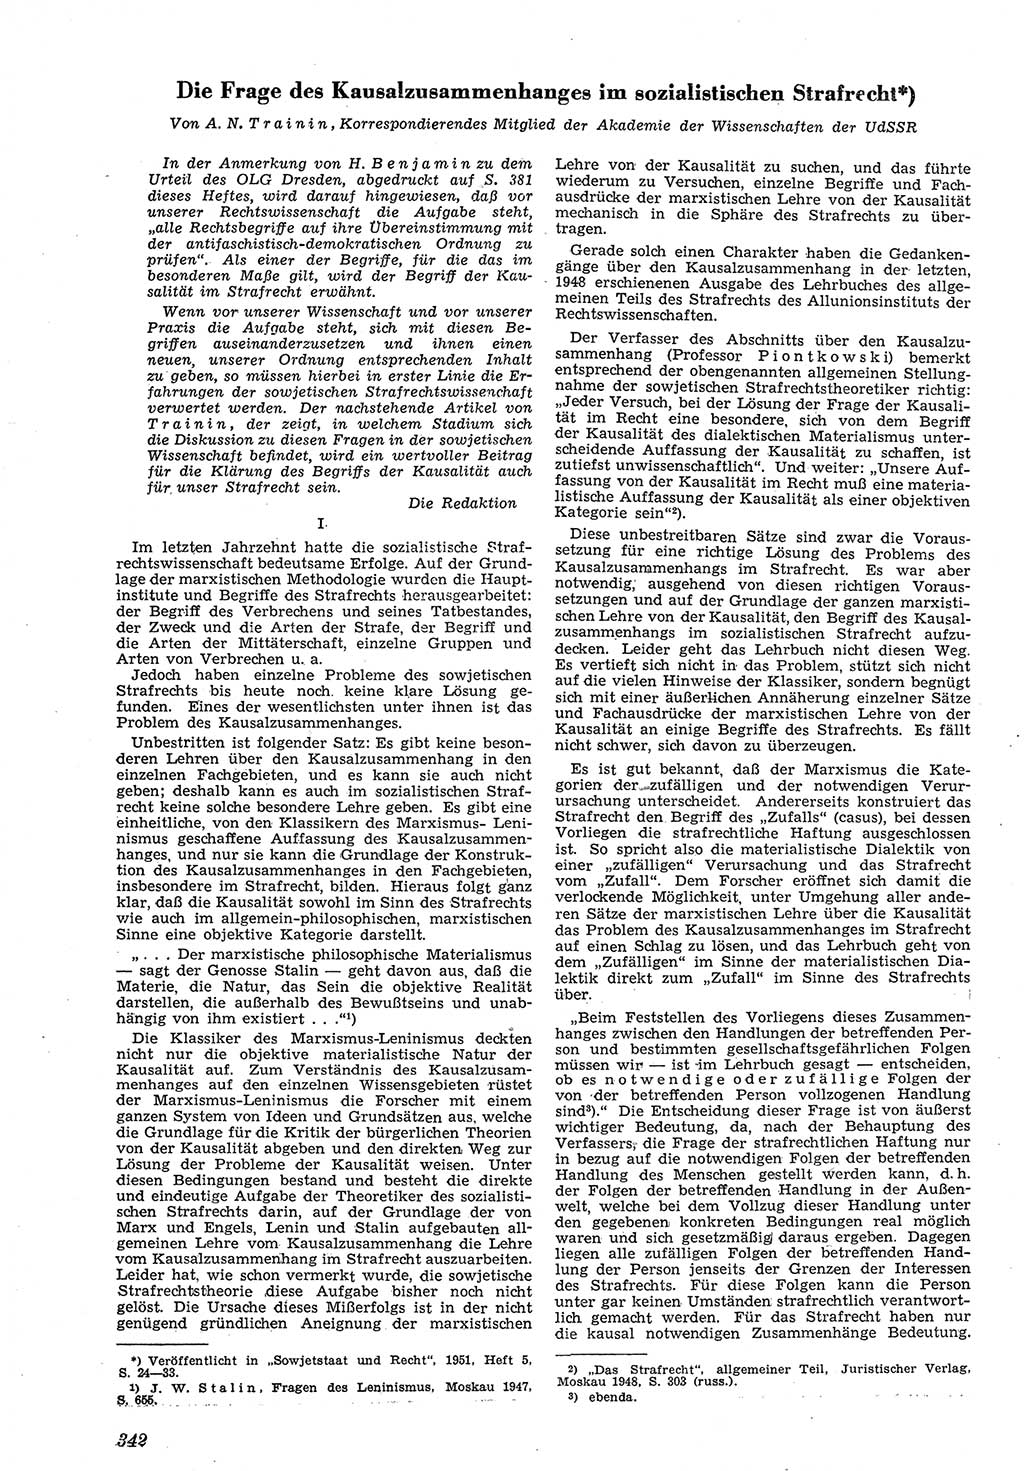 Neue Justiz (NJ), Zeitschrift für Recht und Rechtswissenschaft [Deutsche Demokratische Republik (DDR)], 5. Jahrgang 1951, Seite 342 (NJ DDR 1951, S. 342)